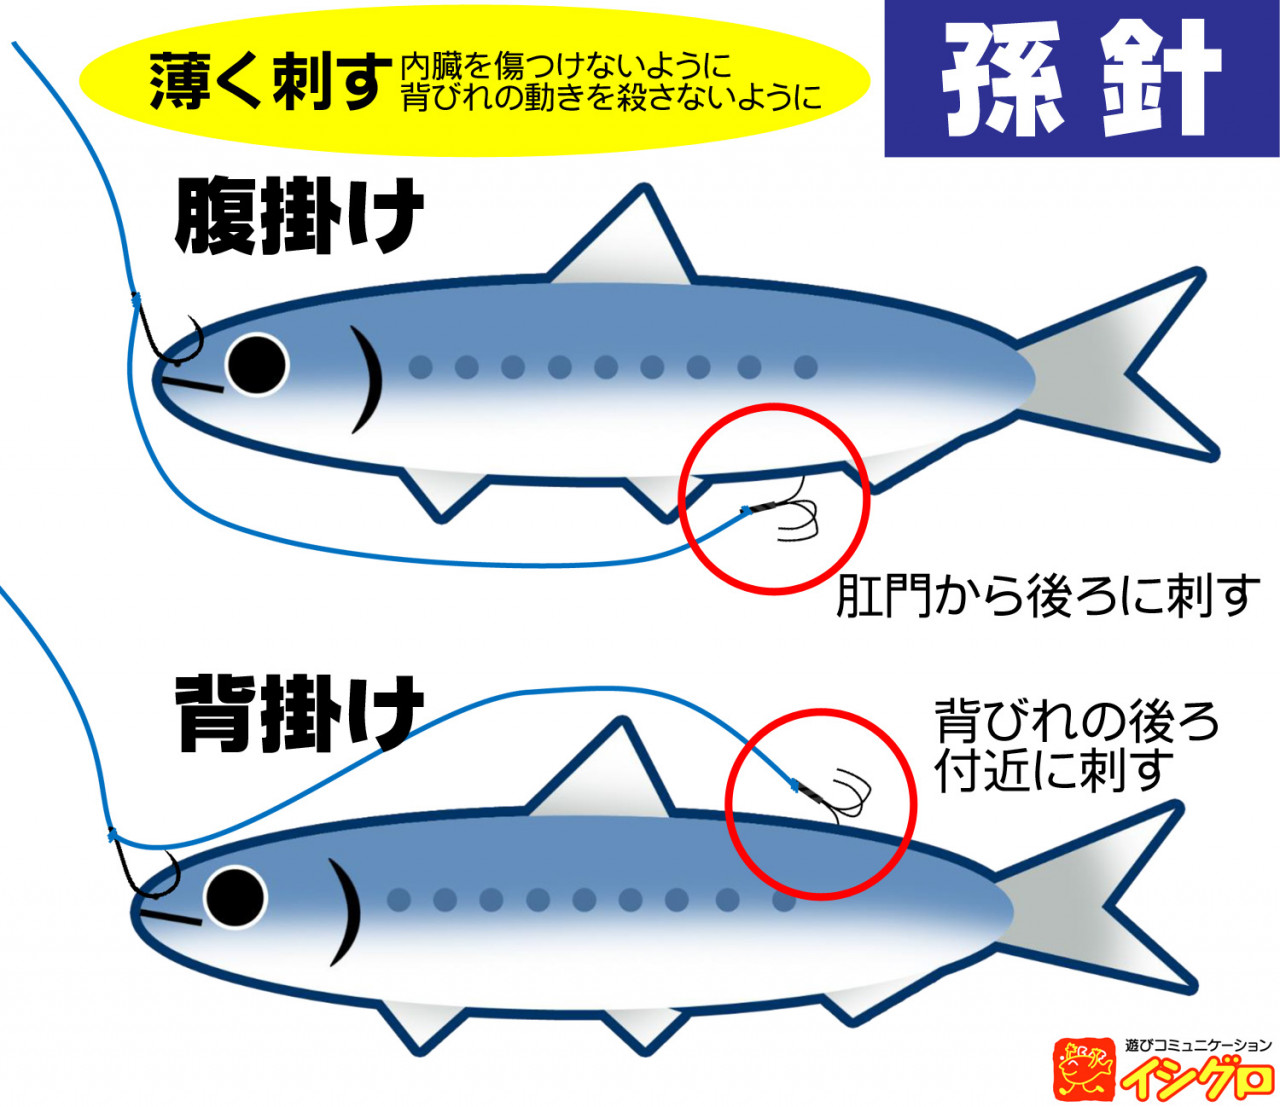 伊勢湾 船ヒラメ泳がせ釣り 深掘り 釣具のイシグロ 釣り情報サイト